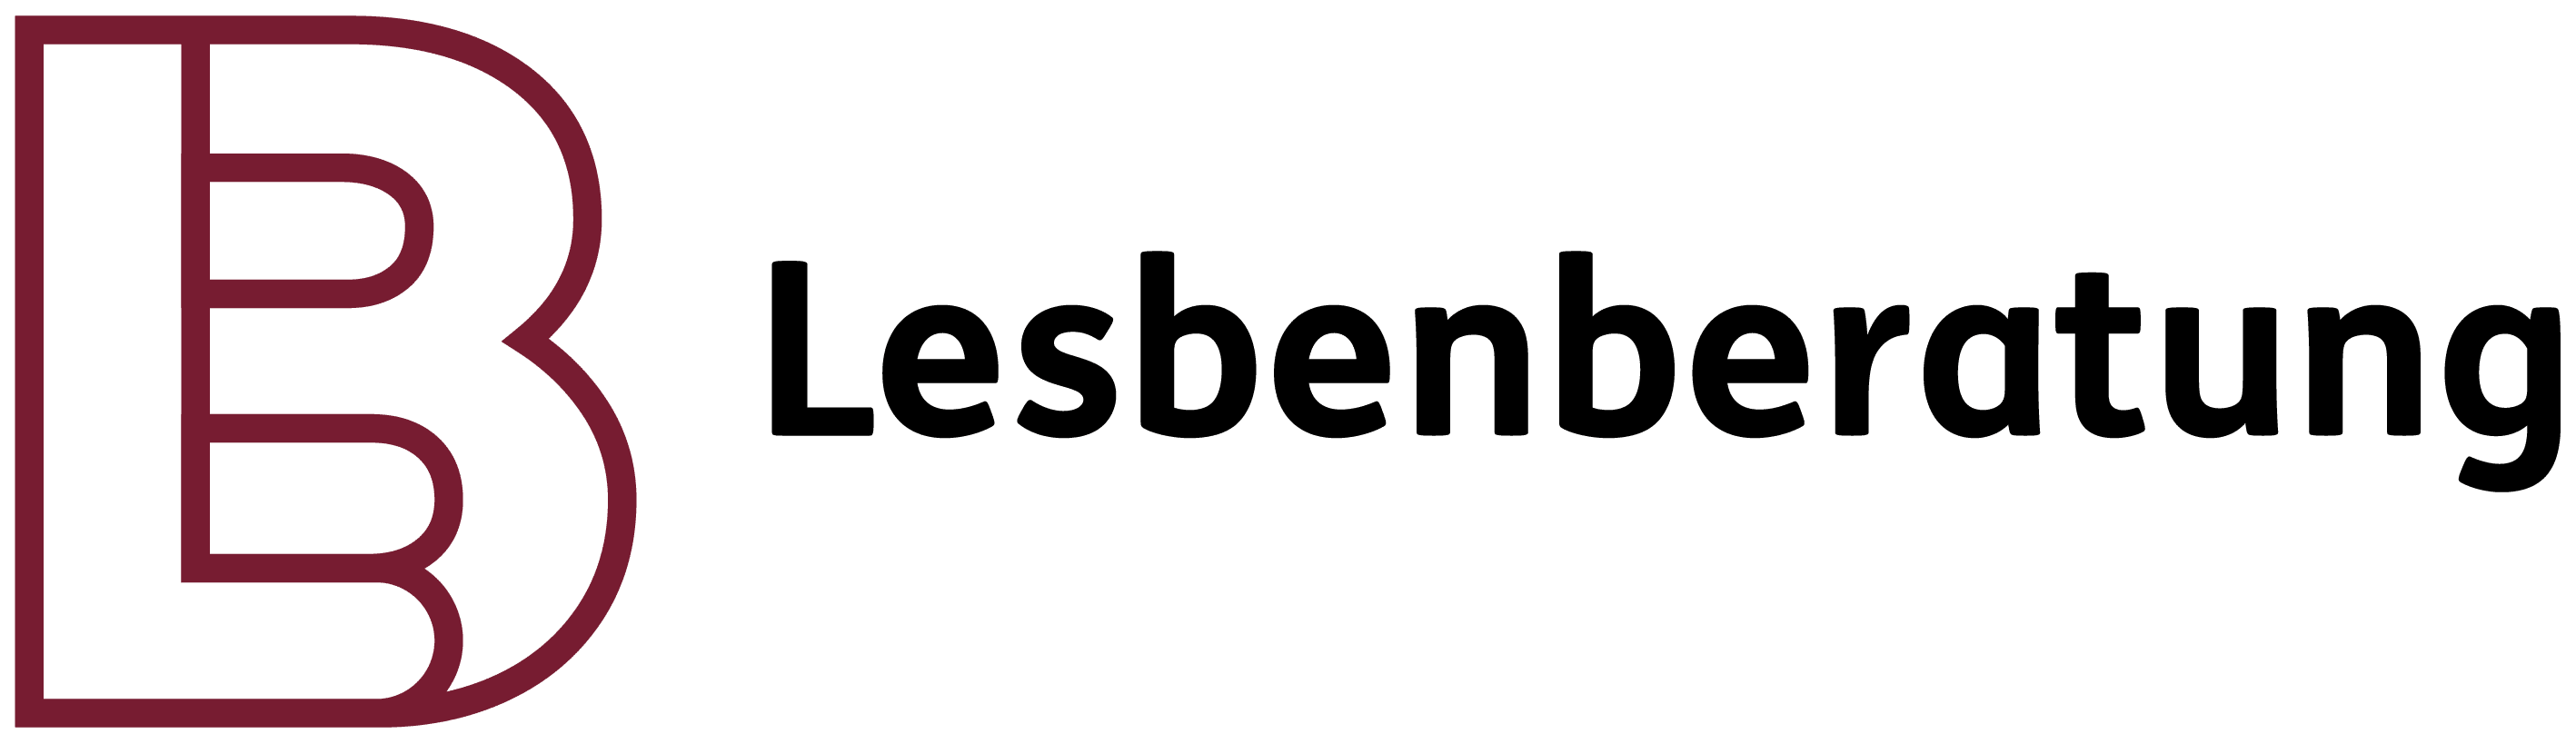 Lesbenberatung Berlin logo